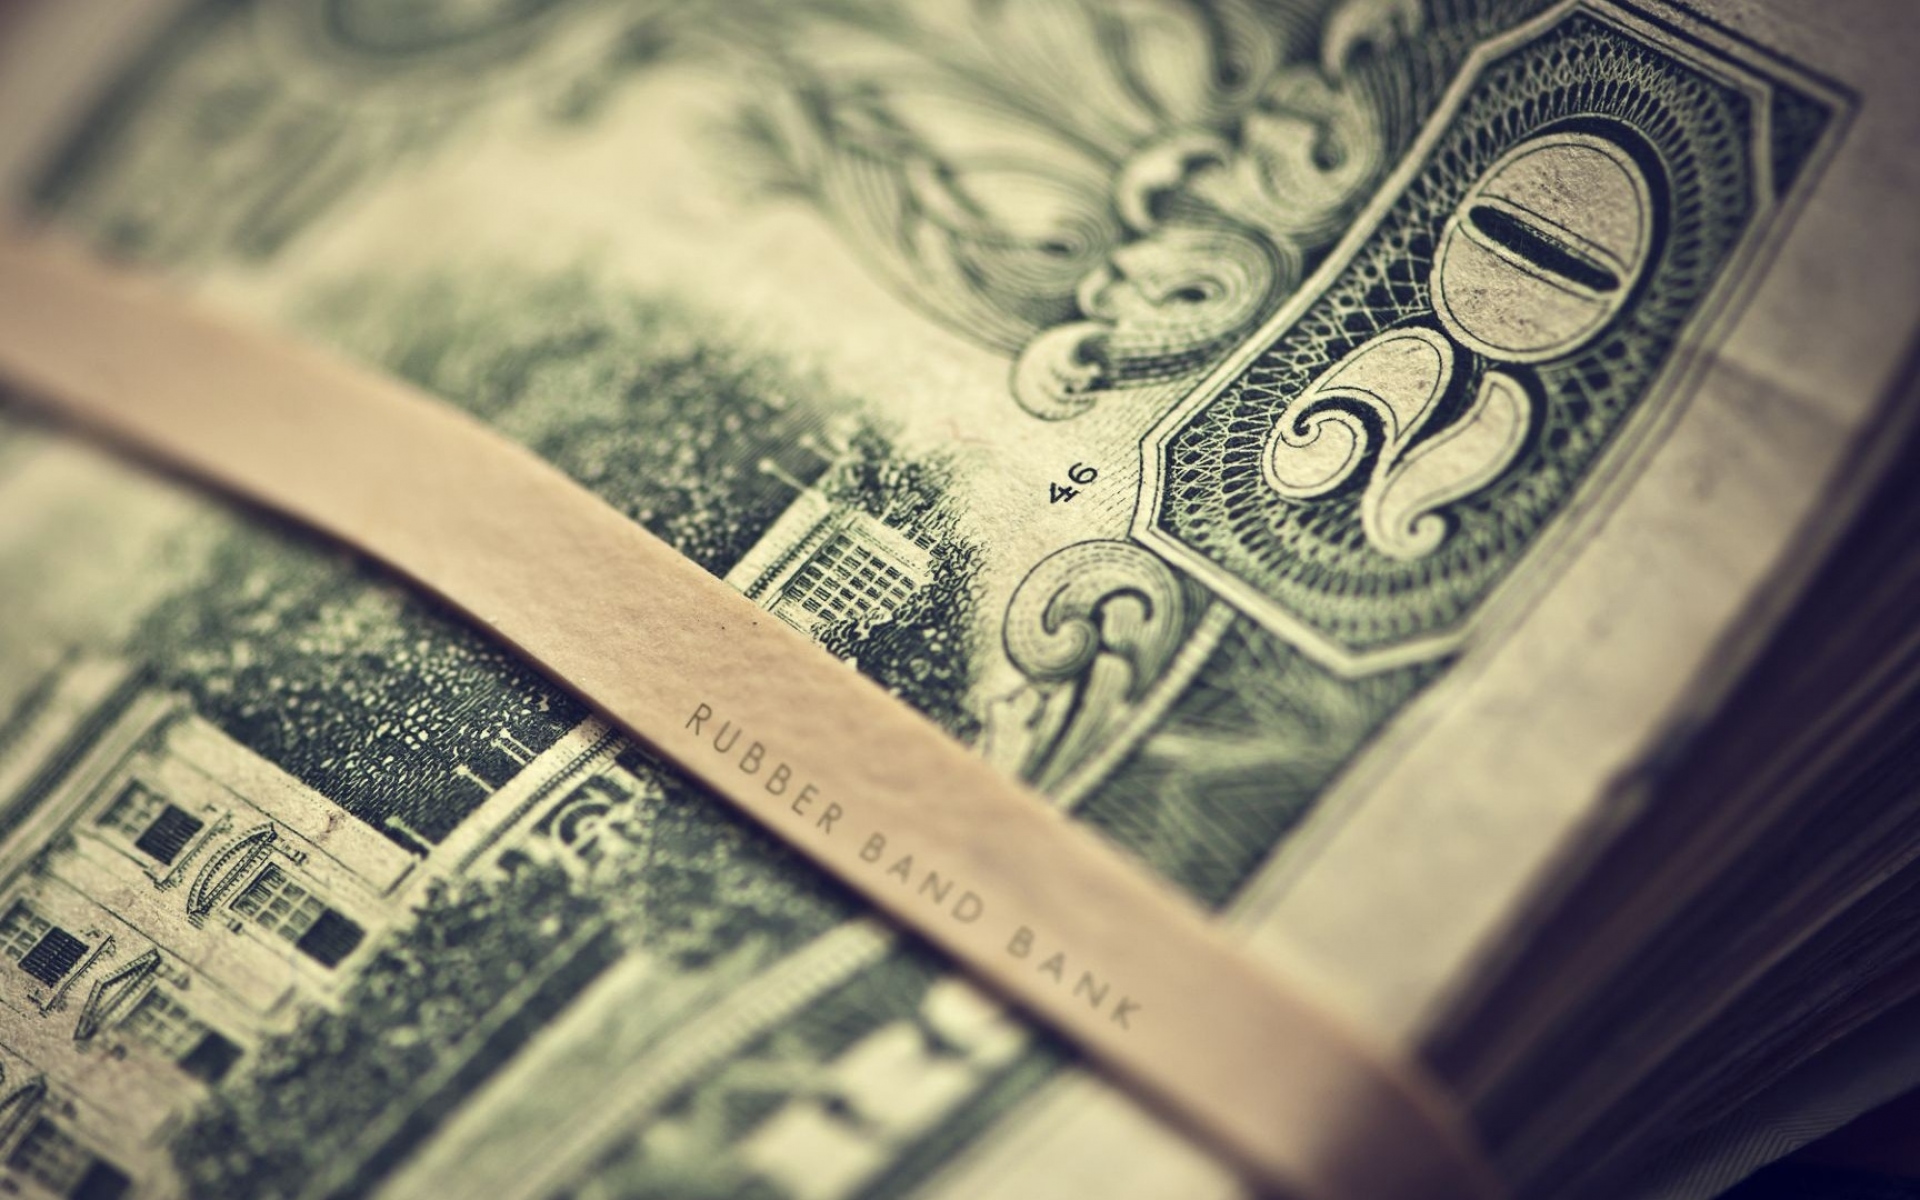 Картинки Банкнота, валюта, деньги, номера фото и обои на рабочий стол